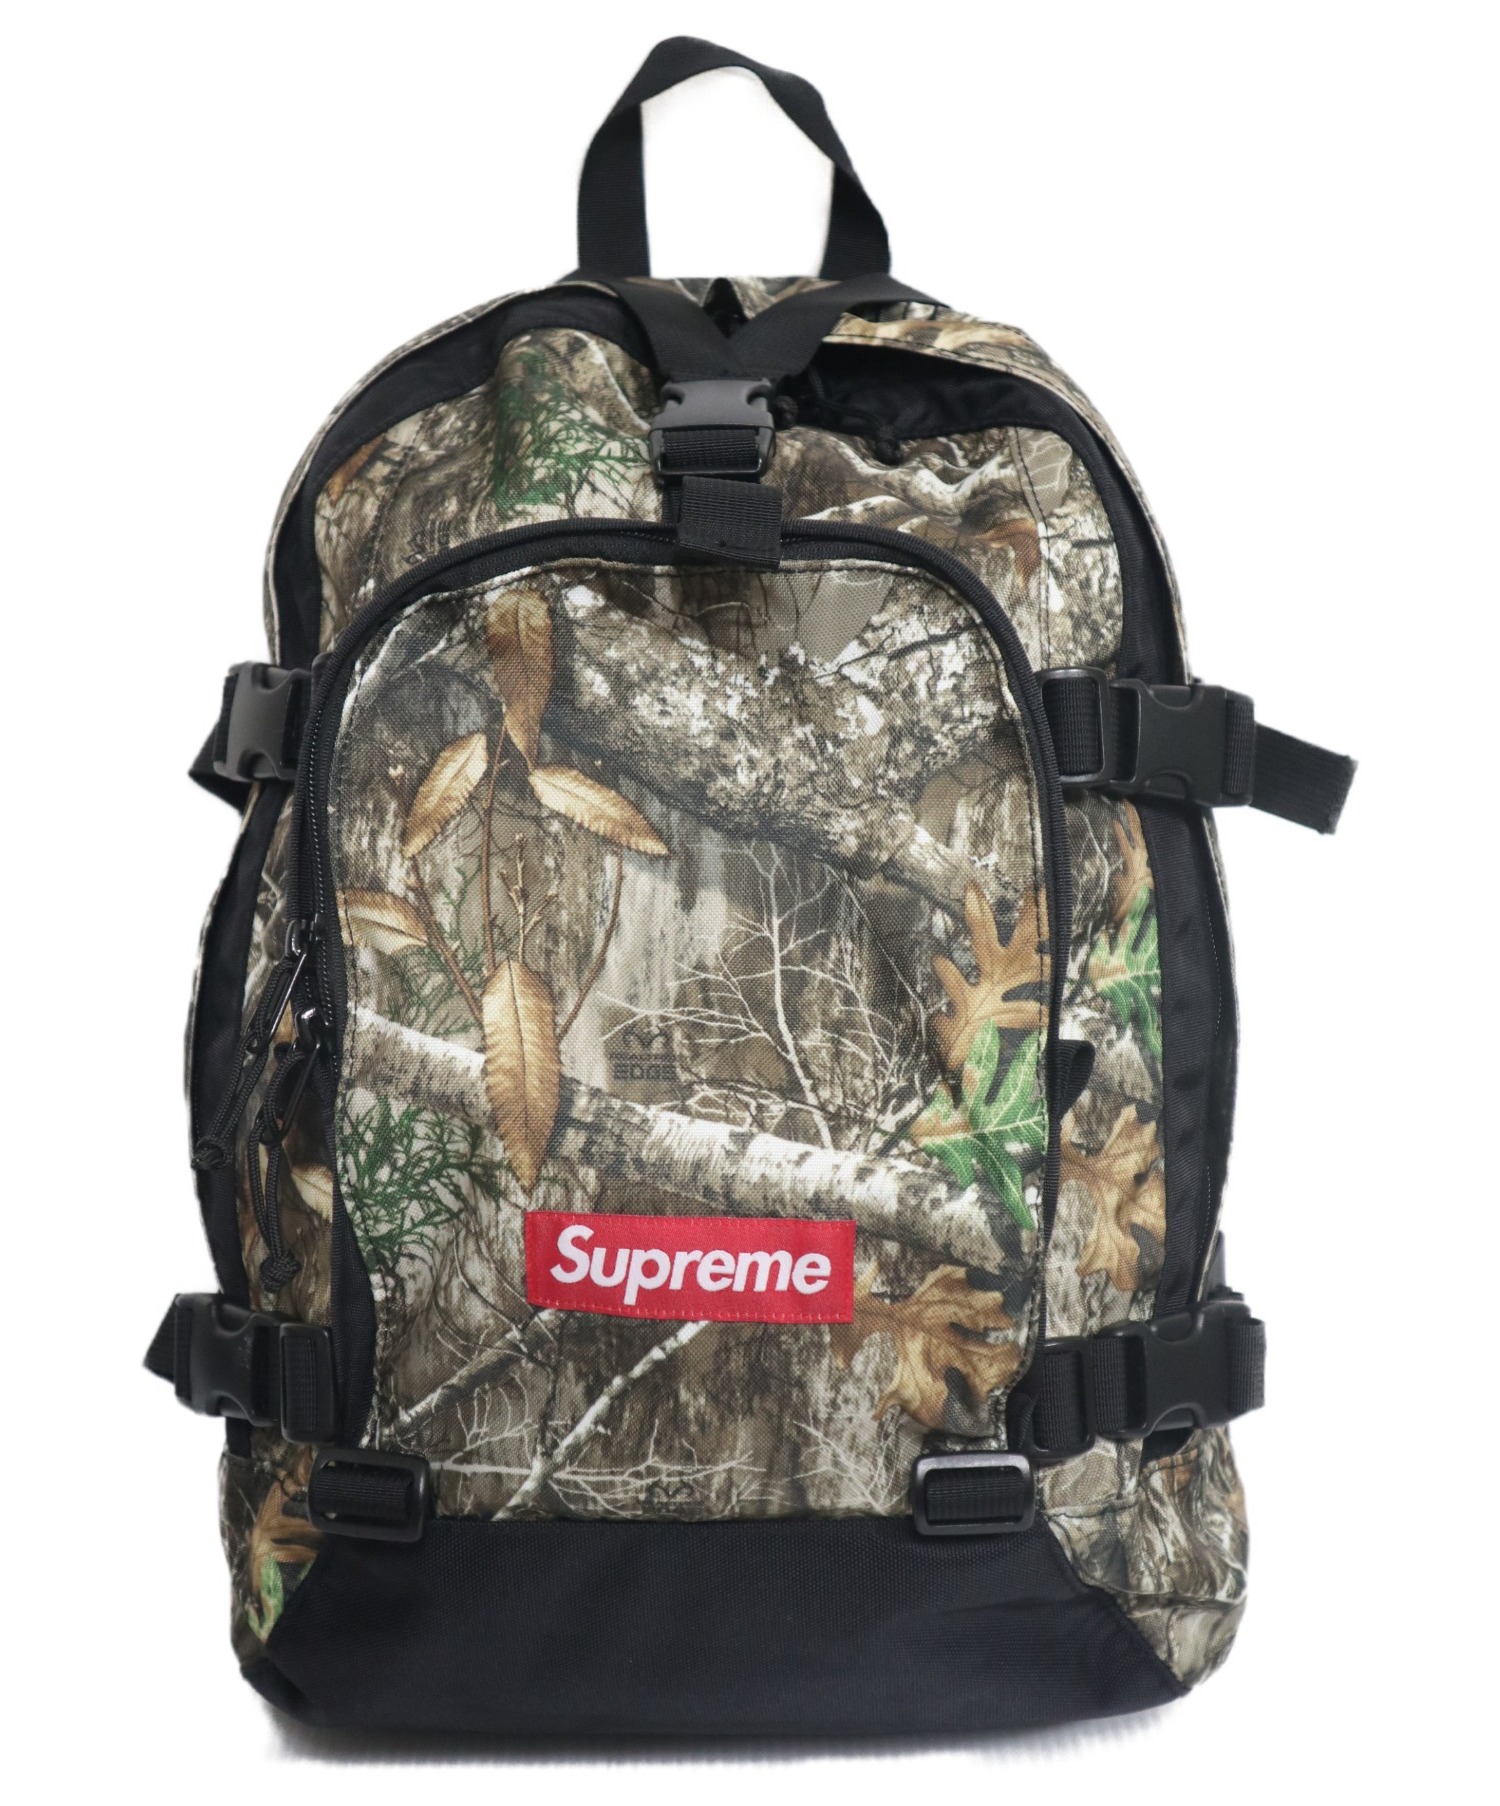 Supreme 19AW Backpack Camo